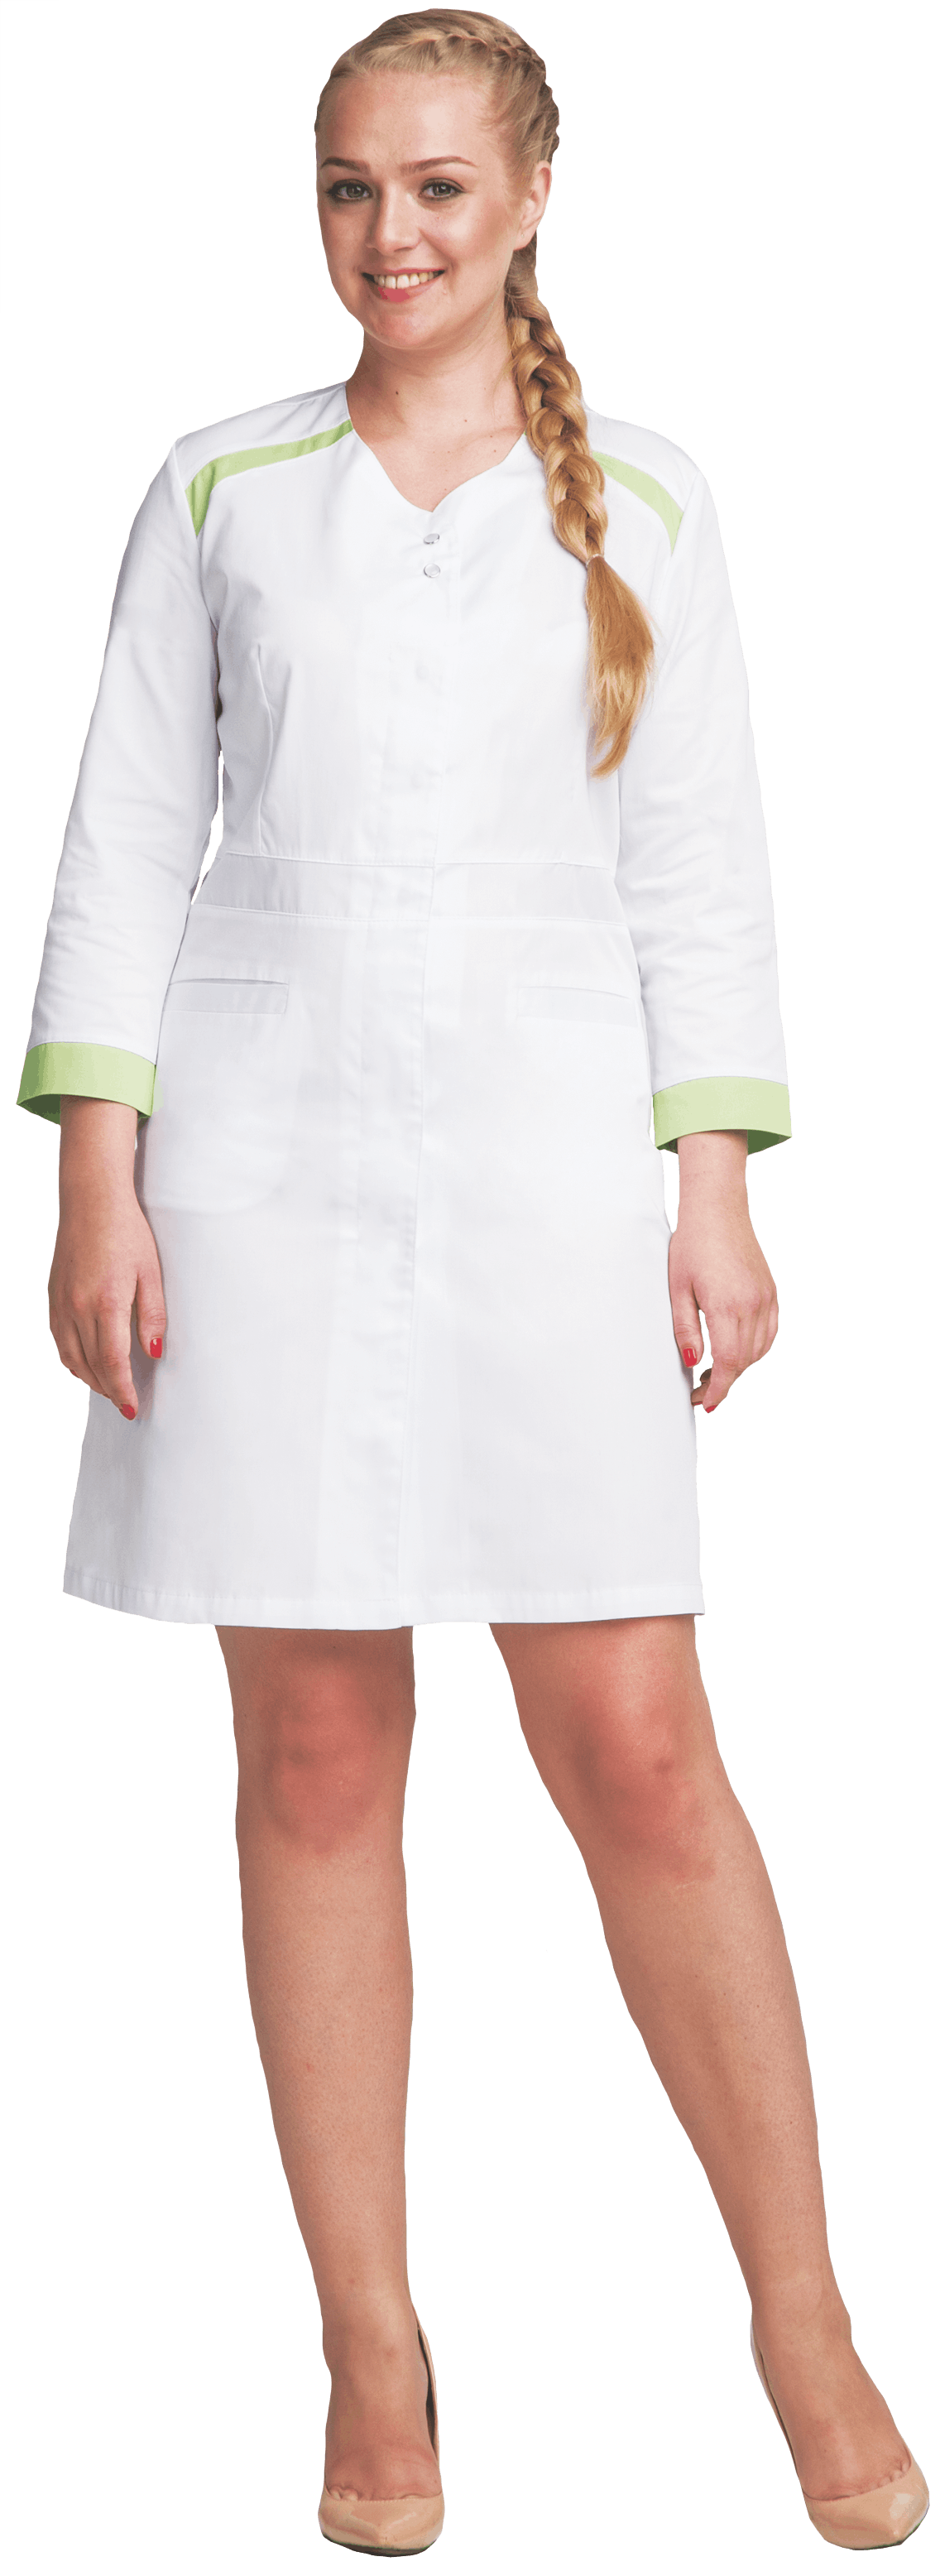 Халат медицинский МИРАЖ  женский белый-зеленый